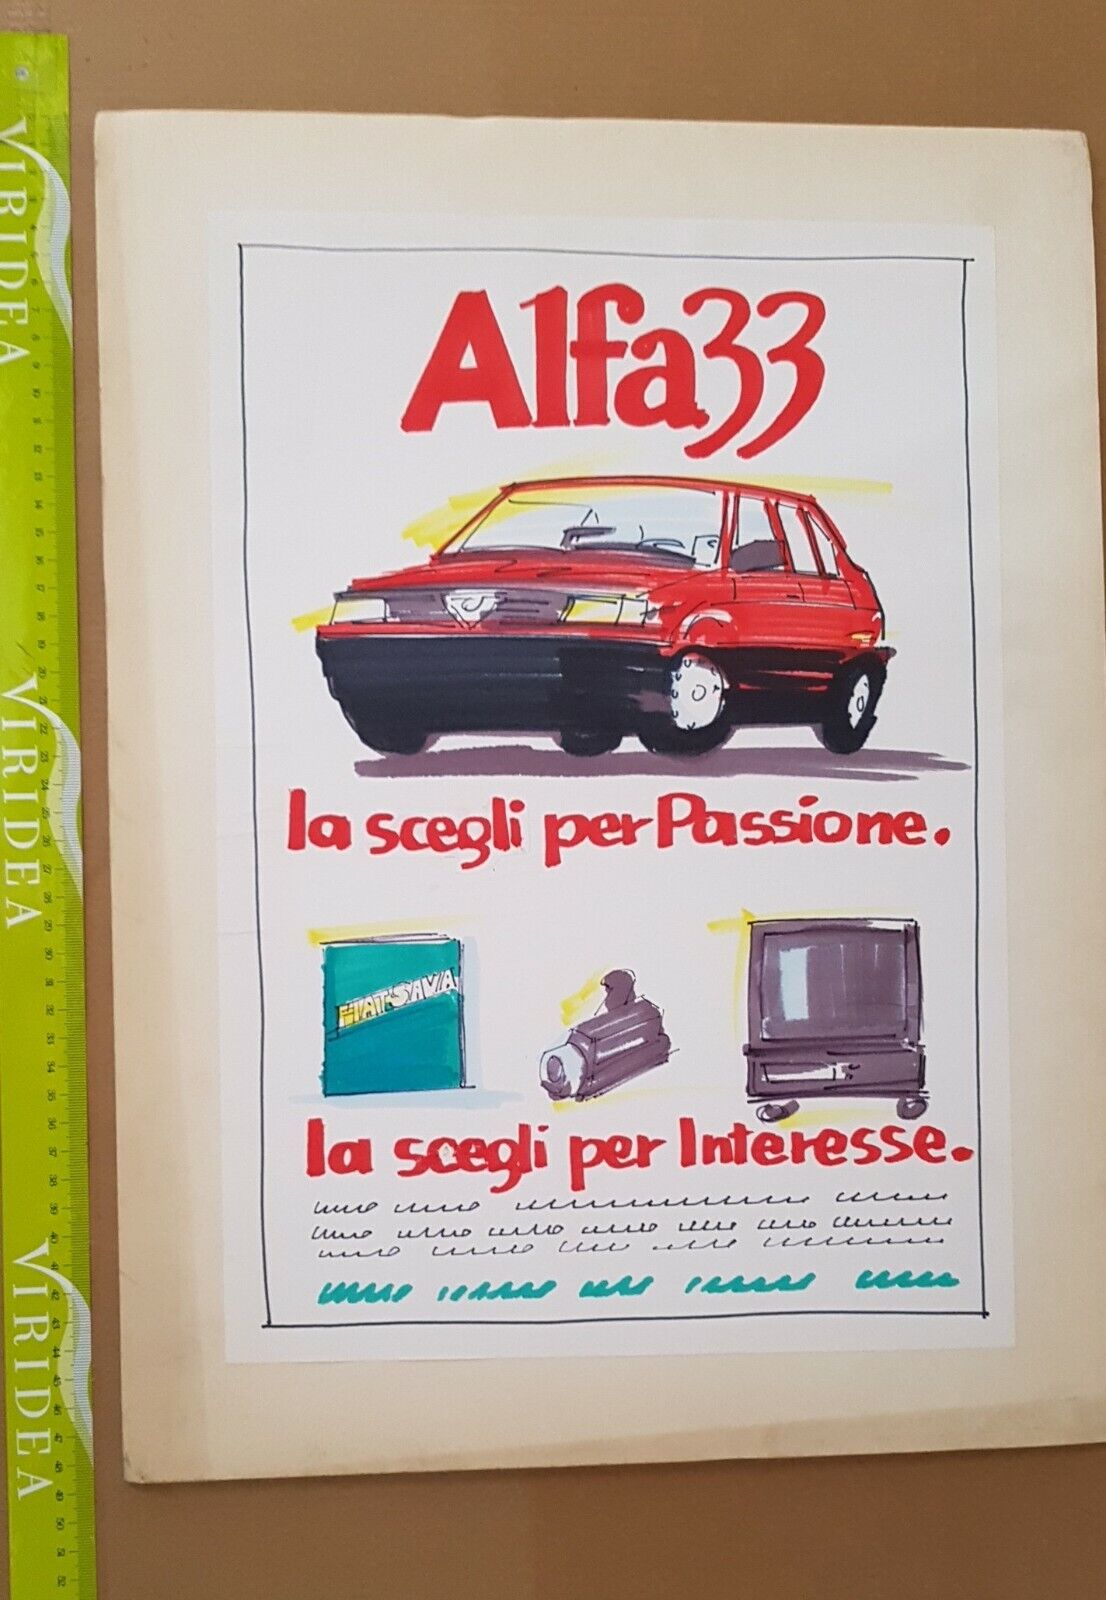 Alfa 33 bozzetto originale pubblicità disegno mano libera no manifesto poster 